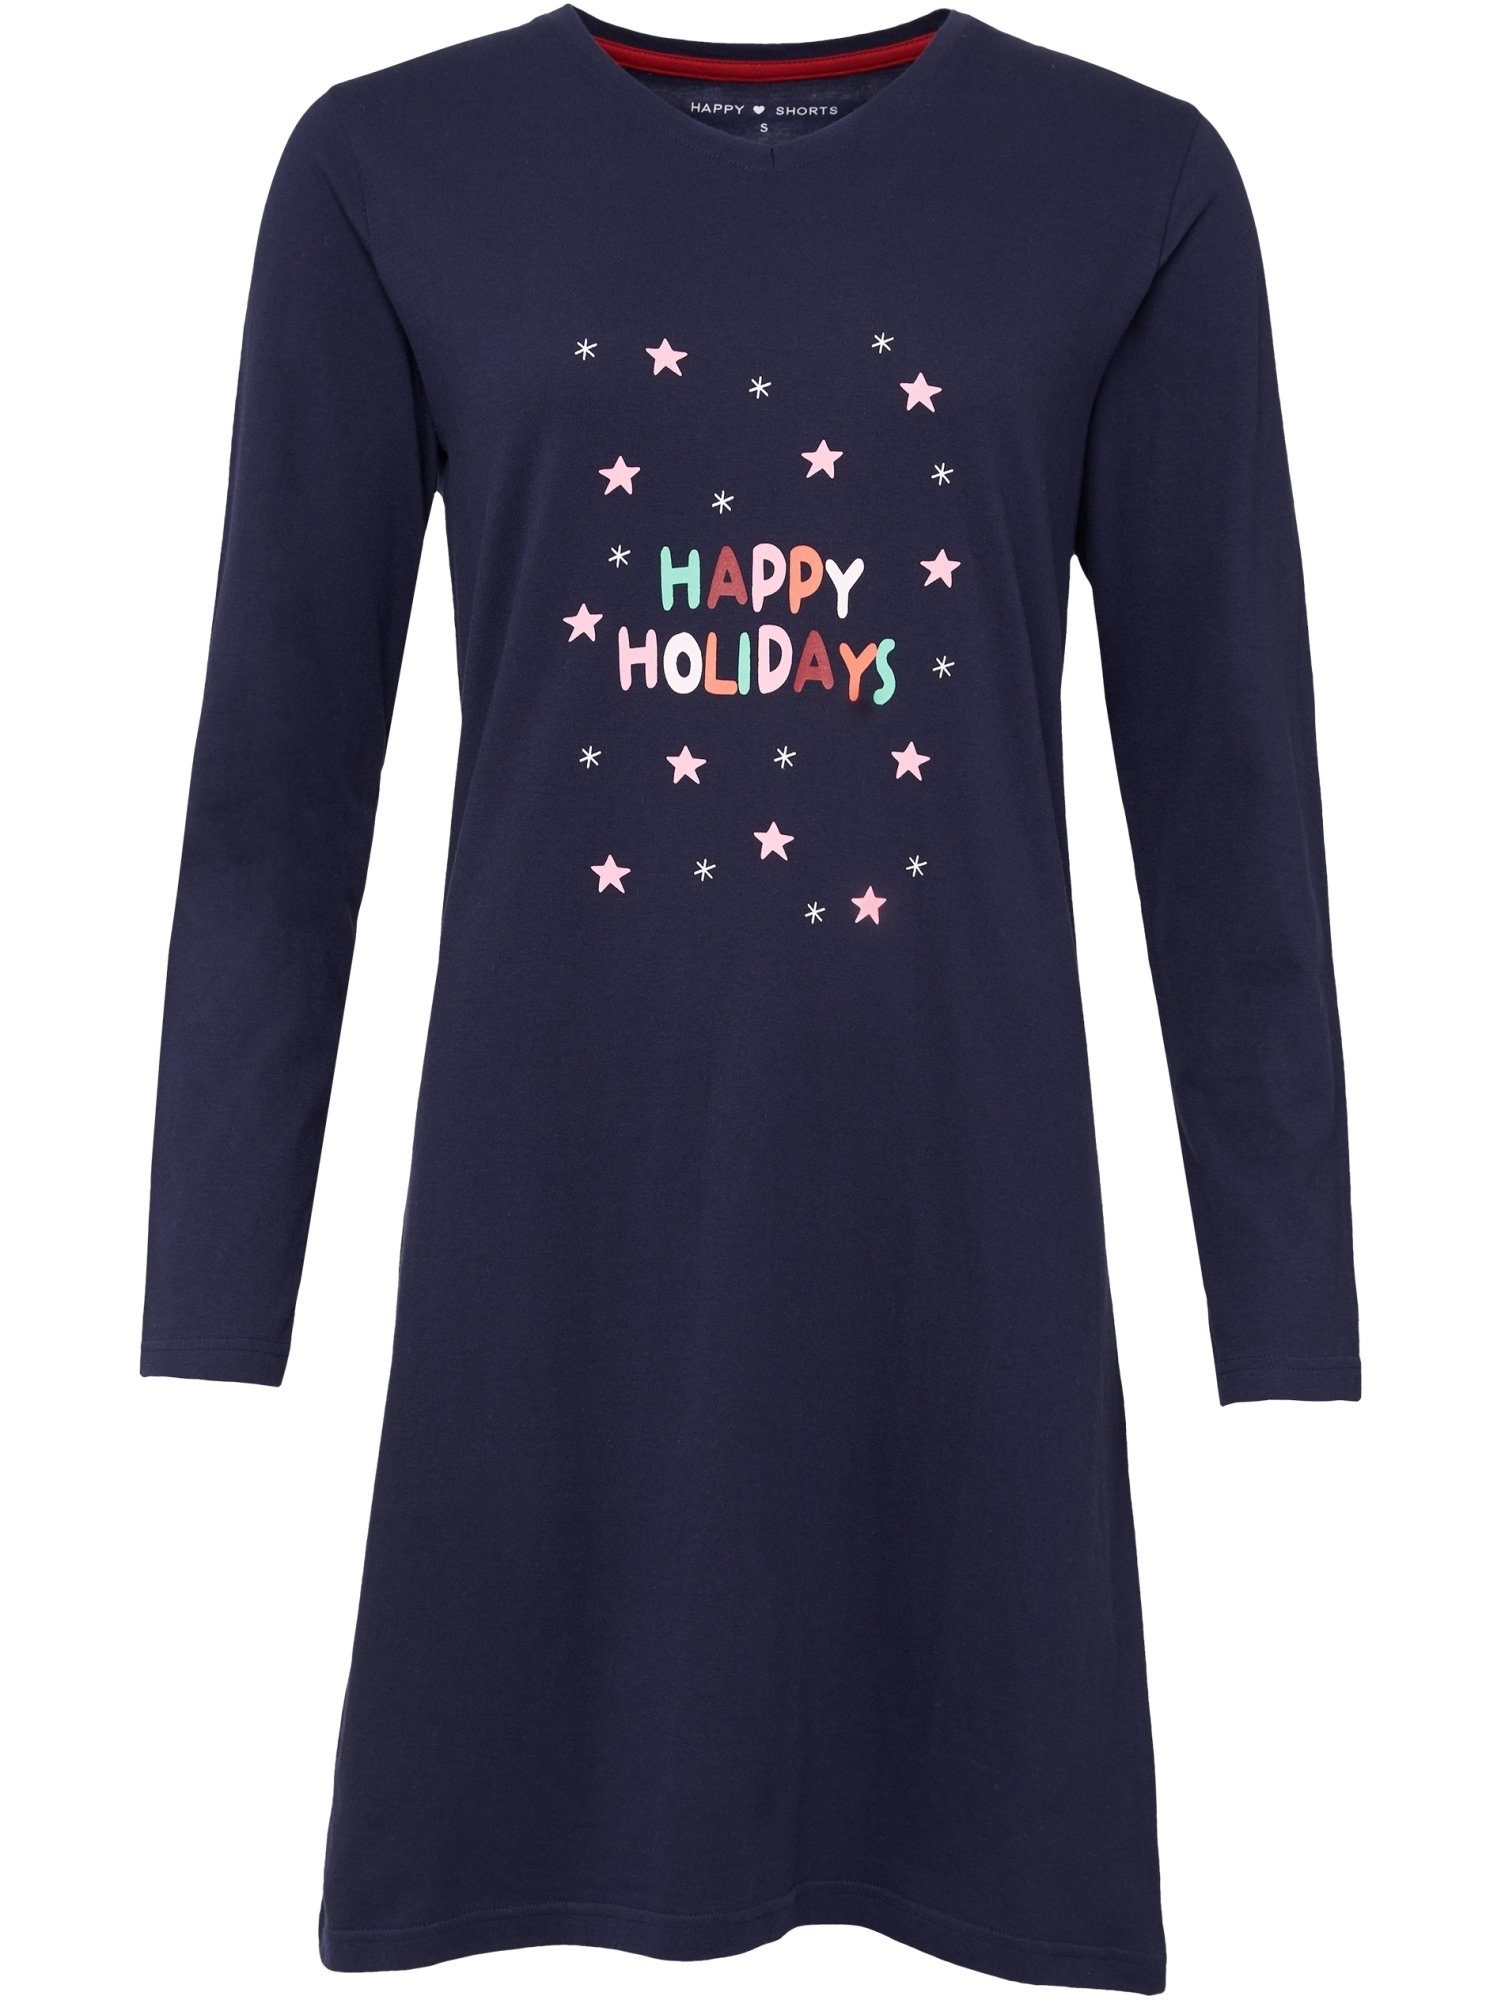 HAPPY SHORTS Nachthemd Xmas Nacht-hemd schlafmode sleepwear navy